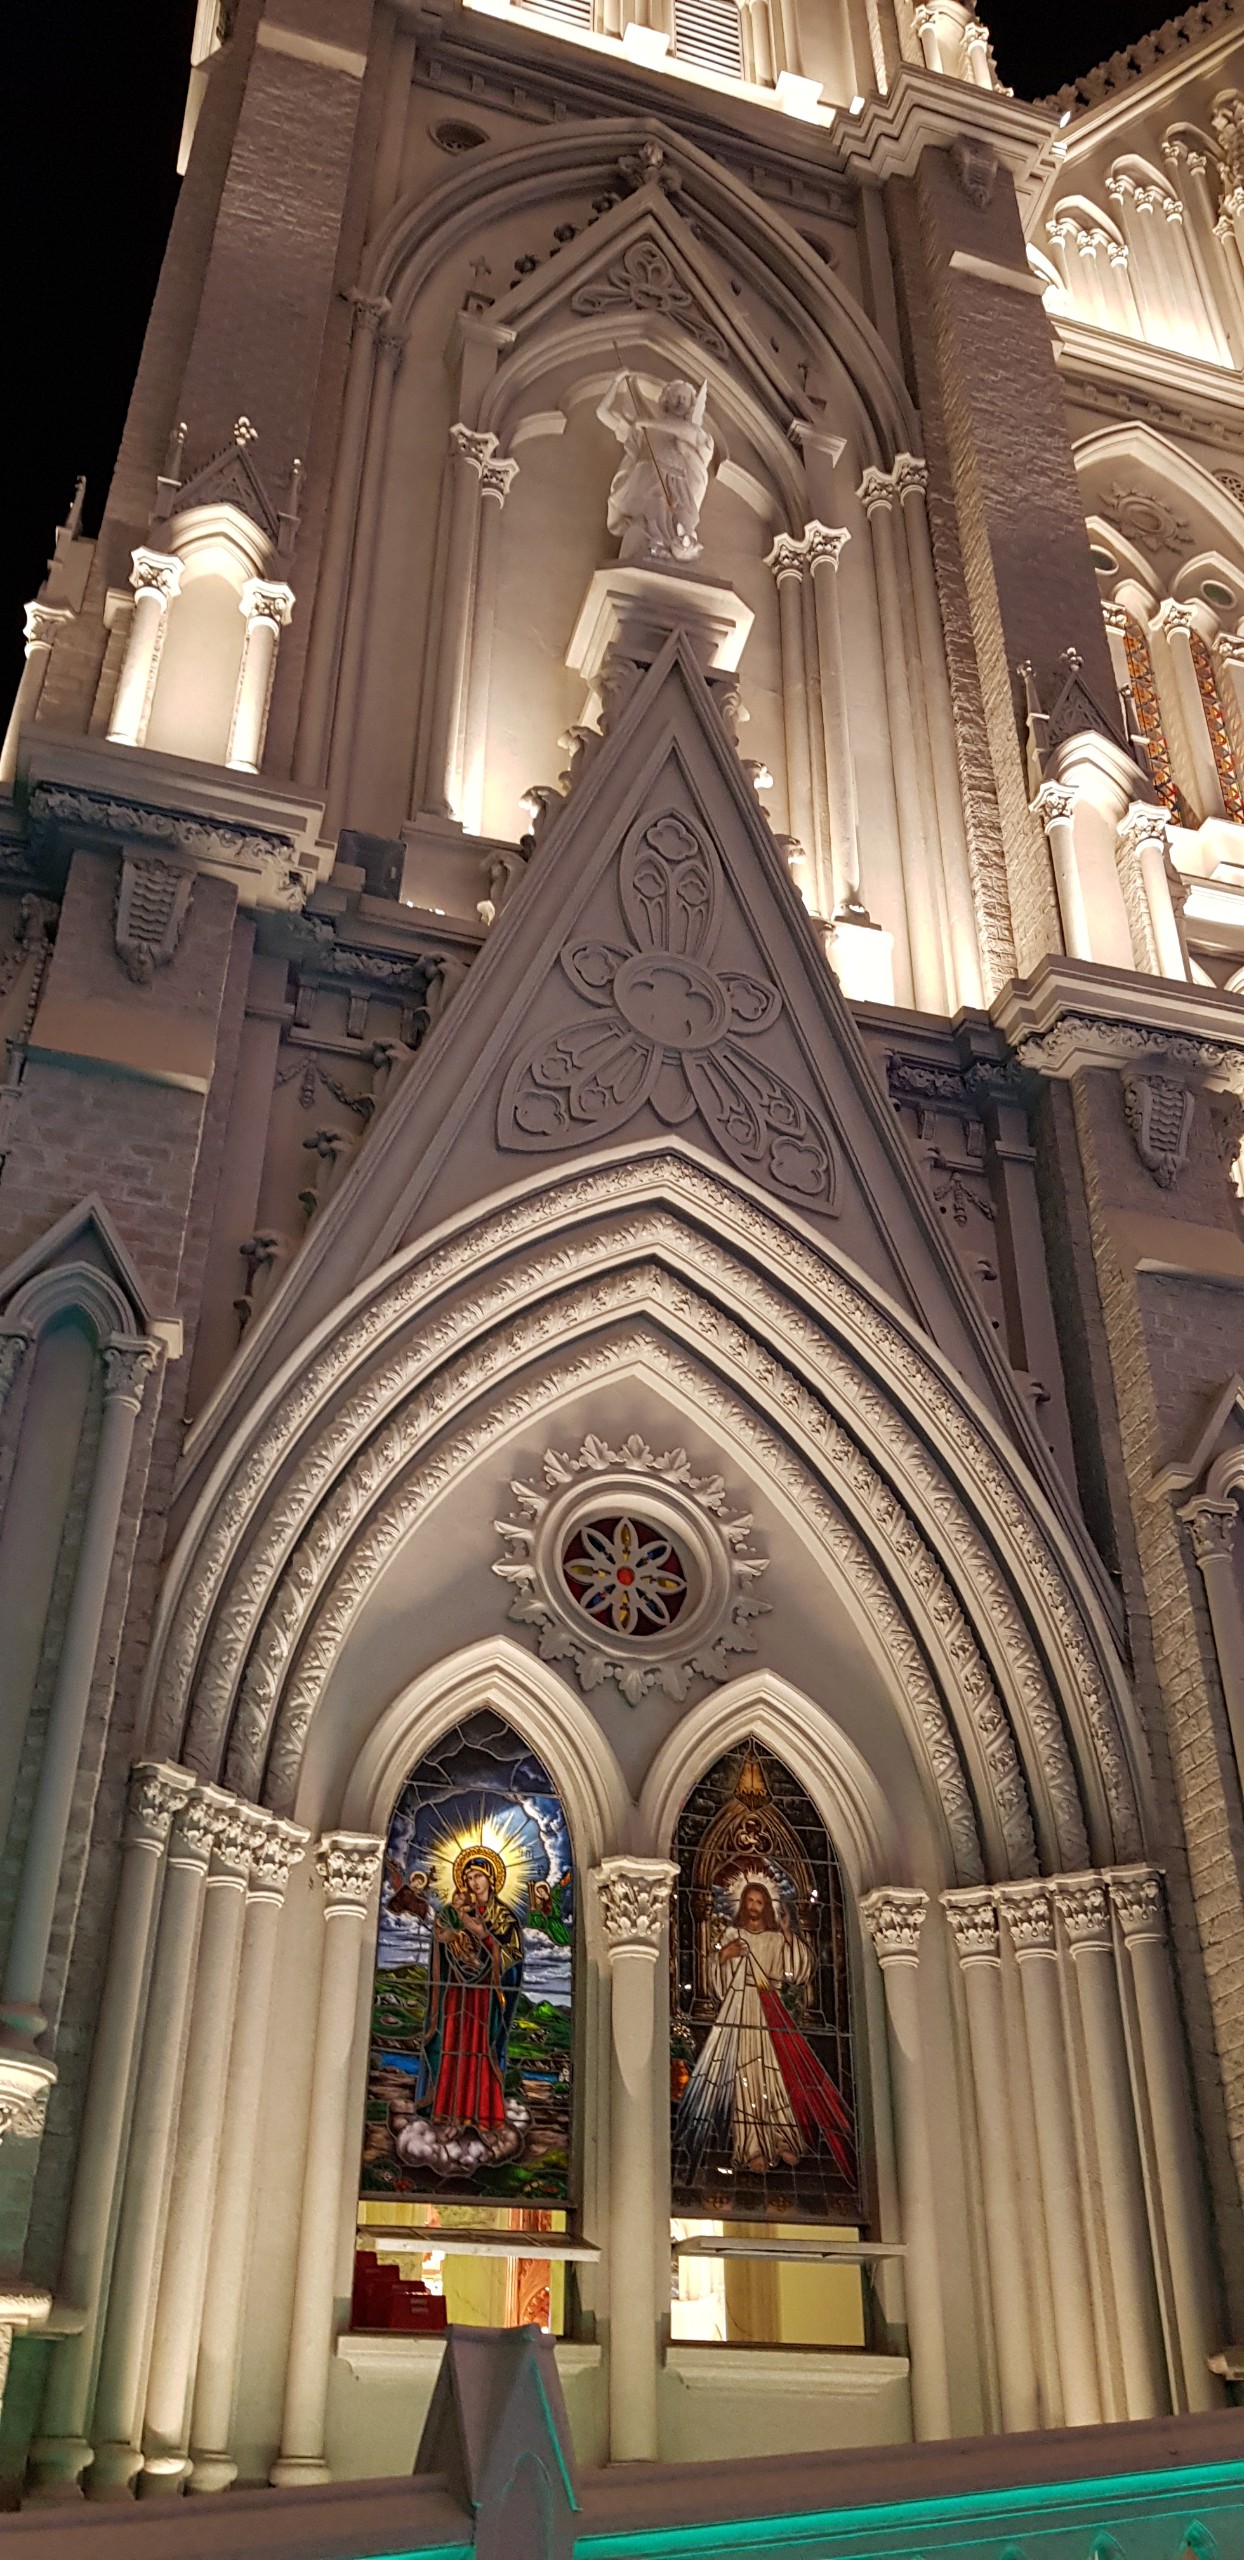 Nhà thờ kiến trúc Gothic tráng lệ ở Bà Rịa - Vũng Tàu mùa Giáng Sinh - 7